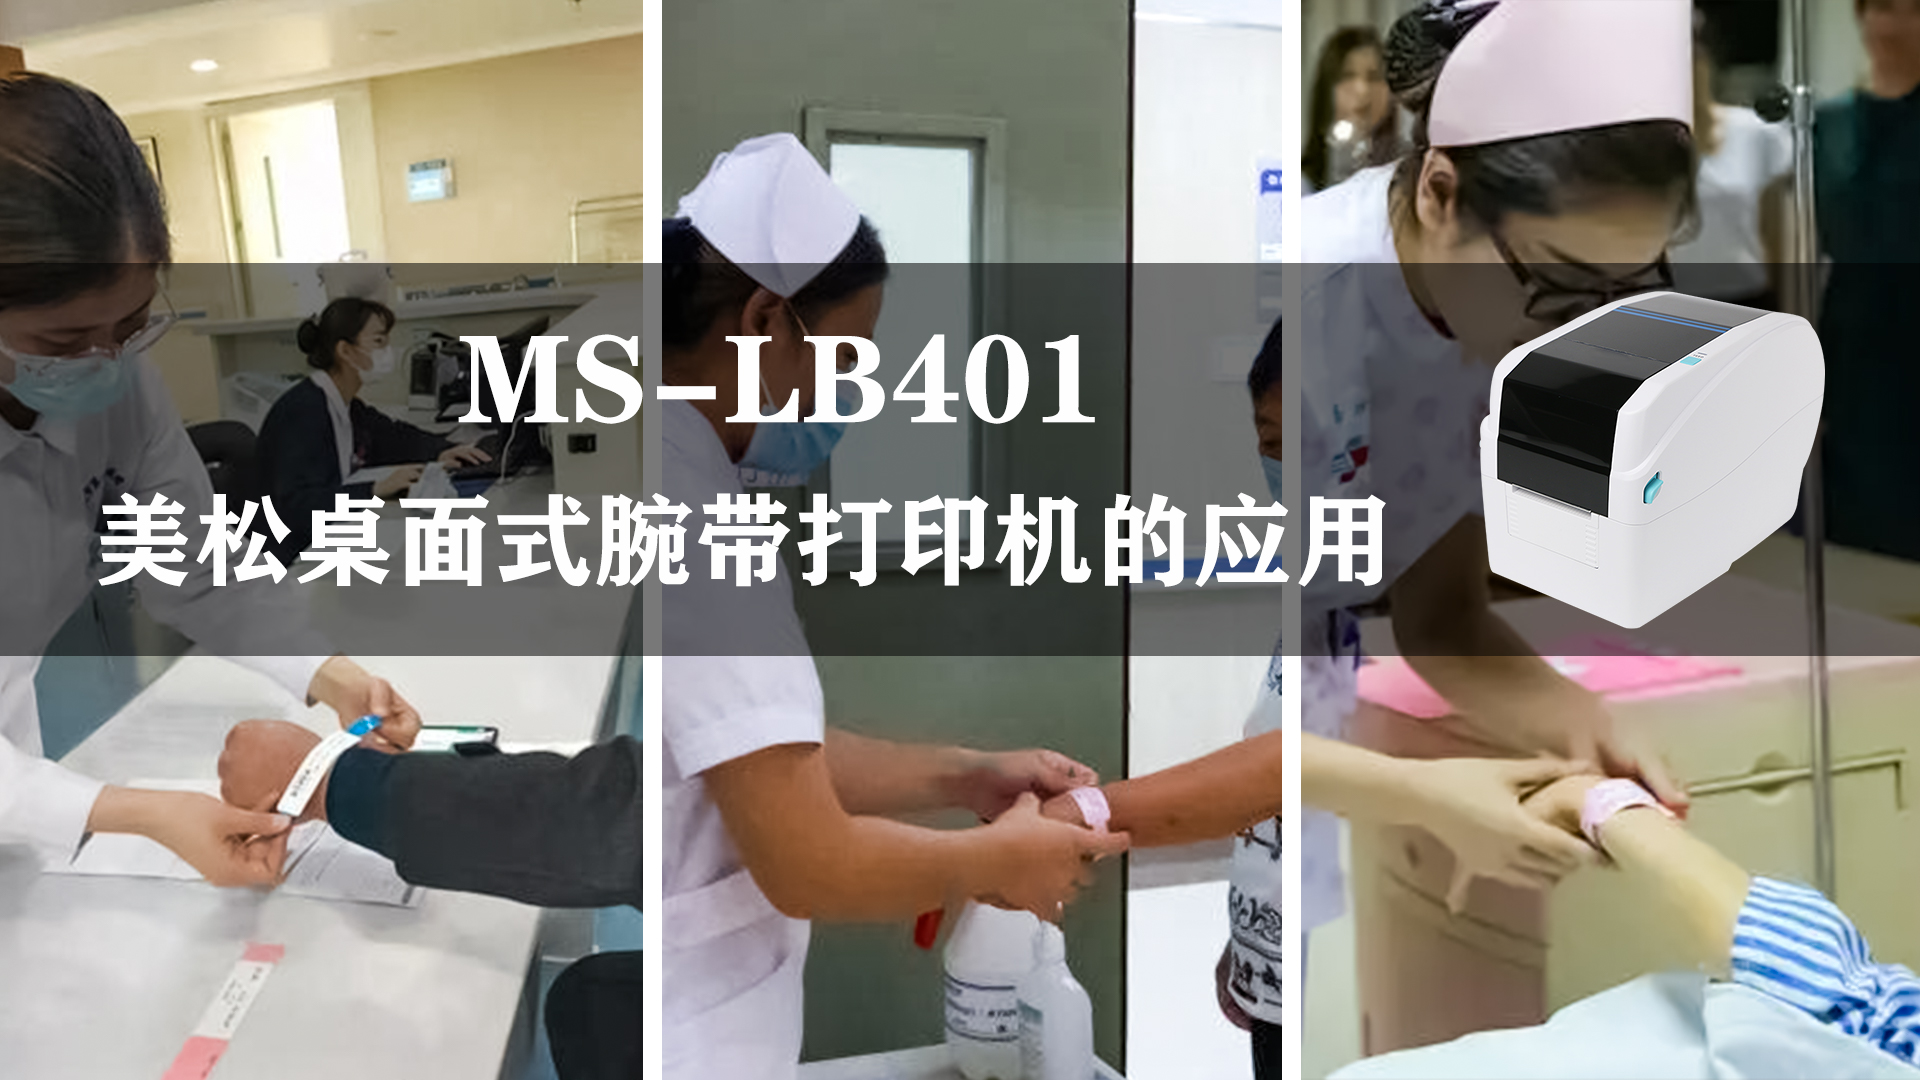 MS-LB401_腕带打印机,应用于医疗腕带行业的案例